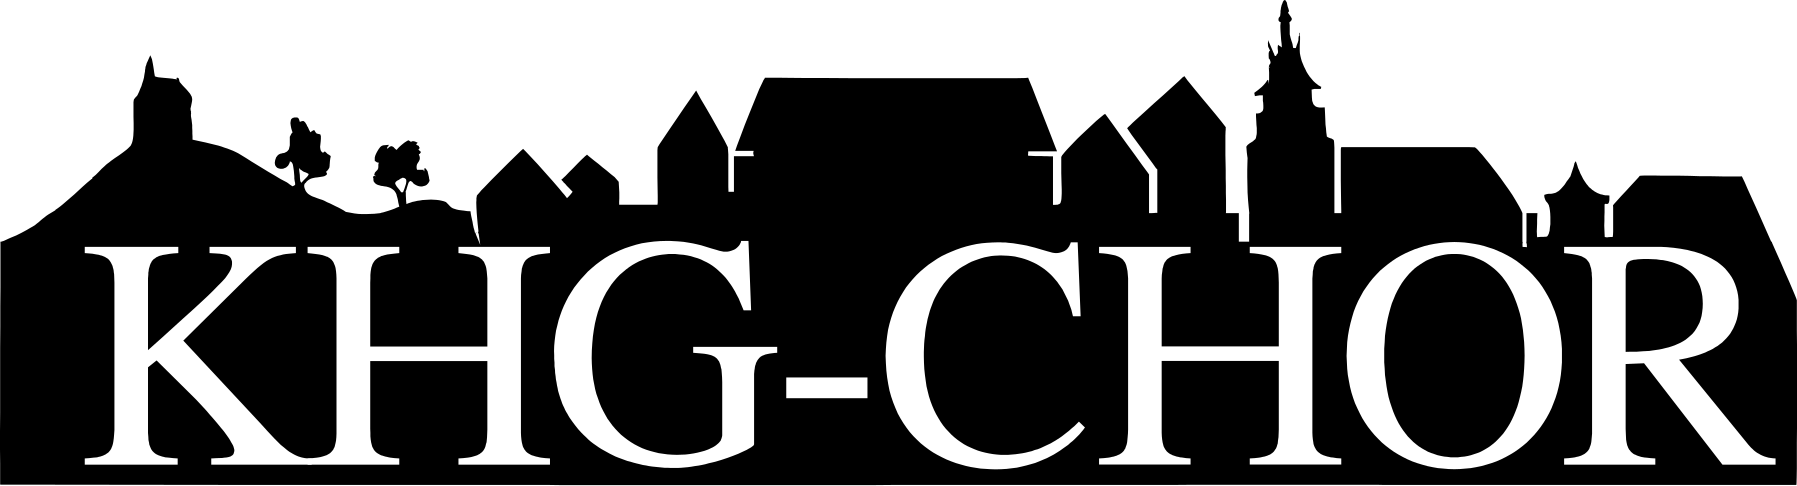 KHG-Chor Logo